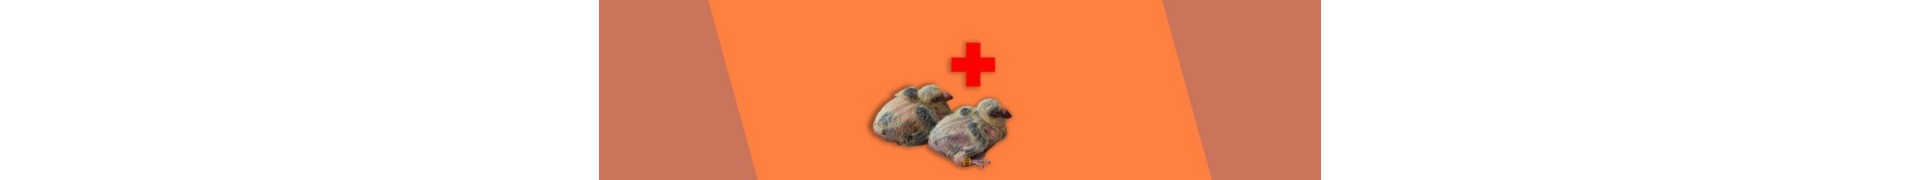 Cría y salud otras razas de palomas